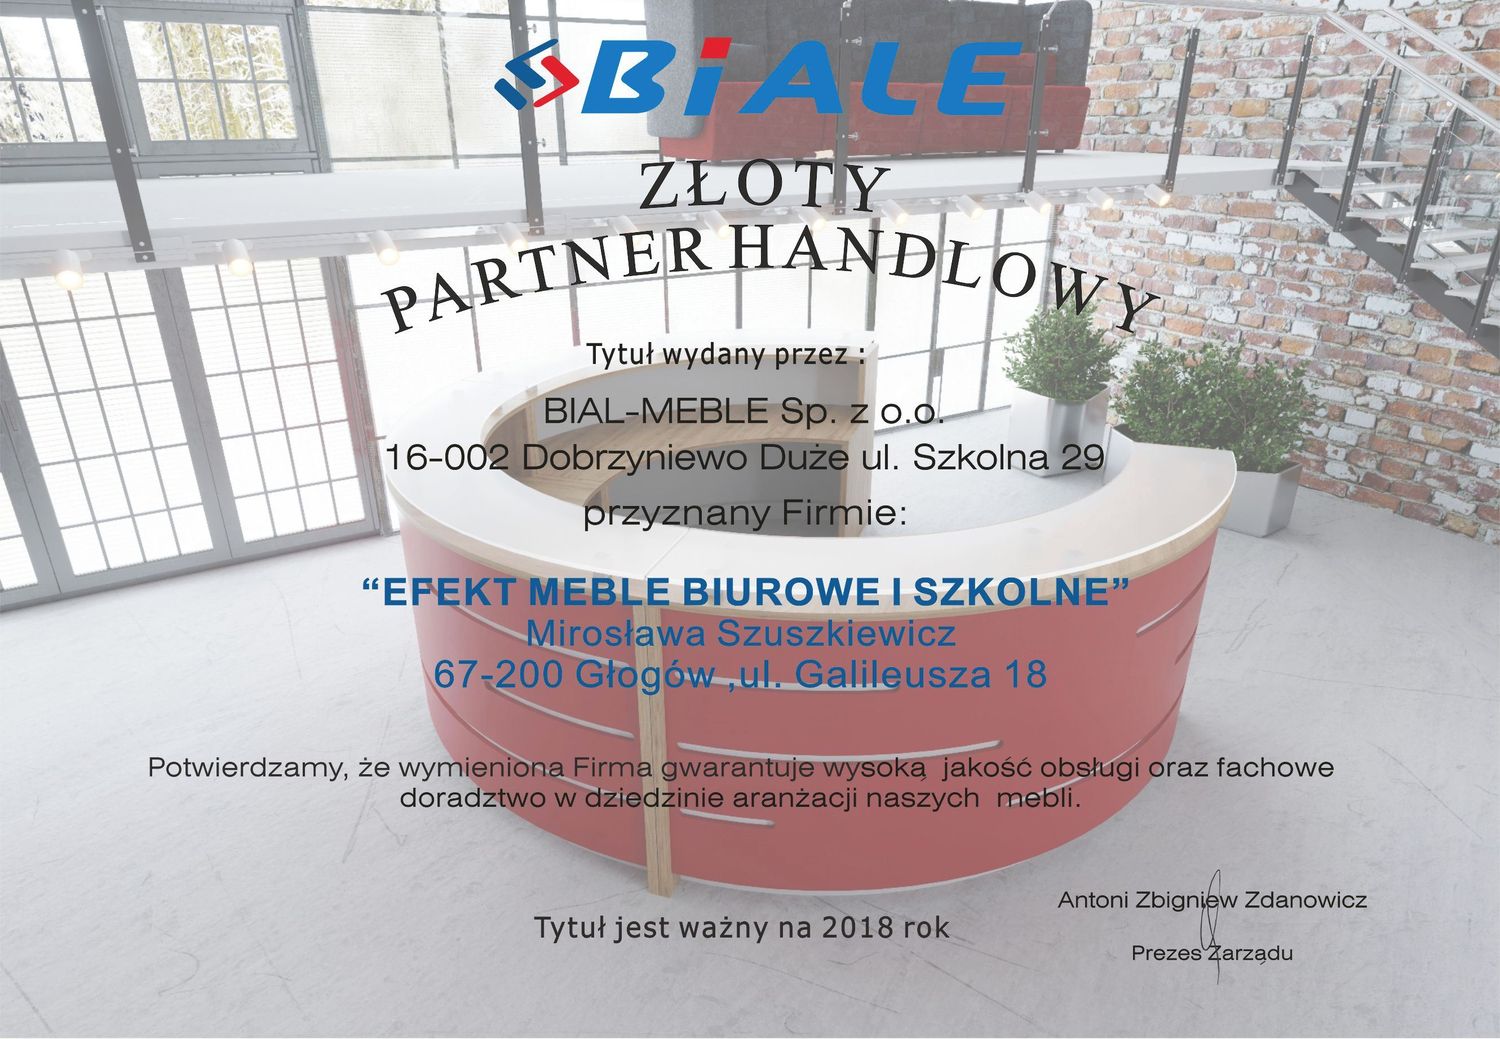 Наша компания, которая является дистрибьютором лучших польских производителей офисной мебели и поворотных офисных кресел, по выгодным контрактам с фабриками, предлагает все товары своим клиентам по заводским ценам